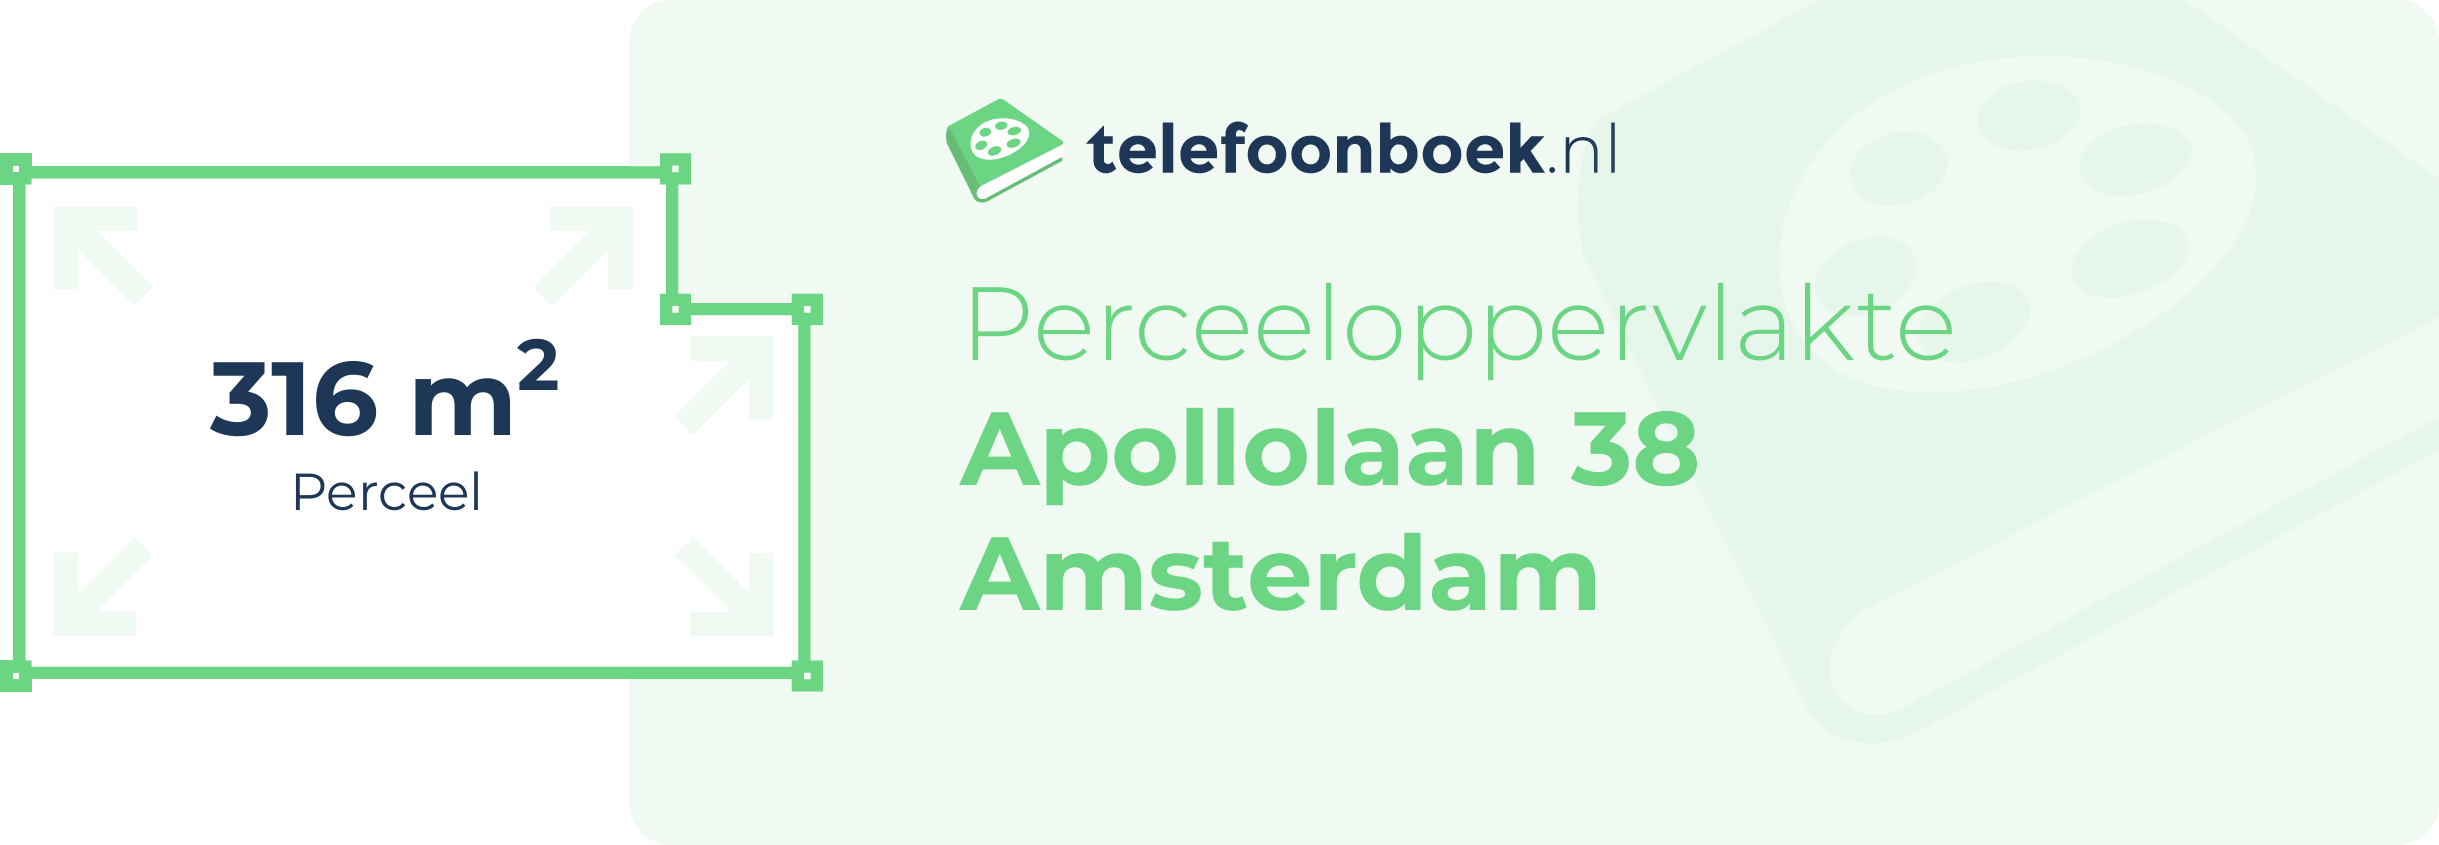 Perceeloppervlakte Apollolaan 38 Amsterdam